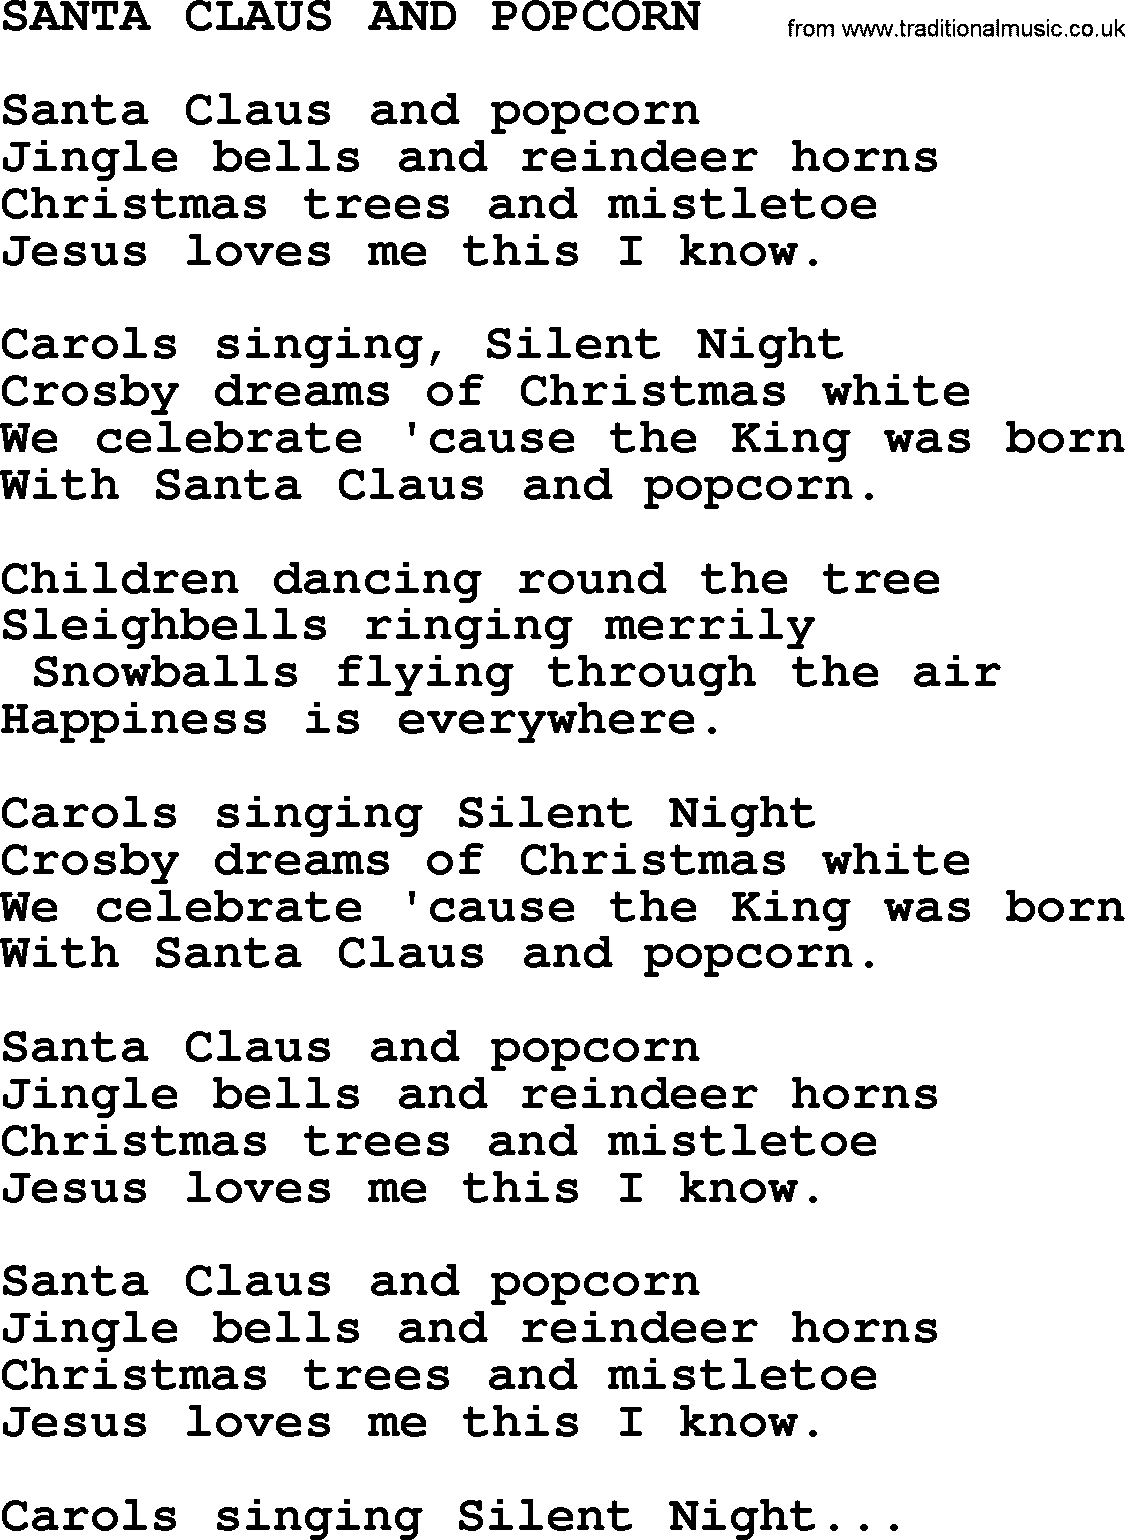 Merle Haggard song: Santa Claus And Popcorn, lyrics.